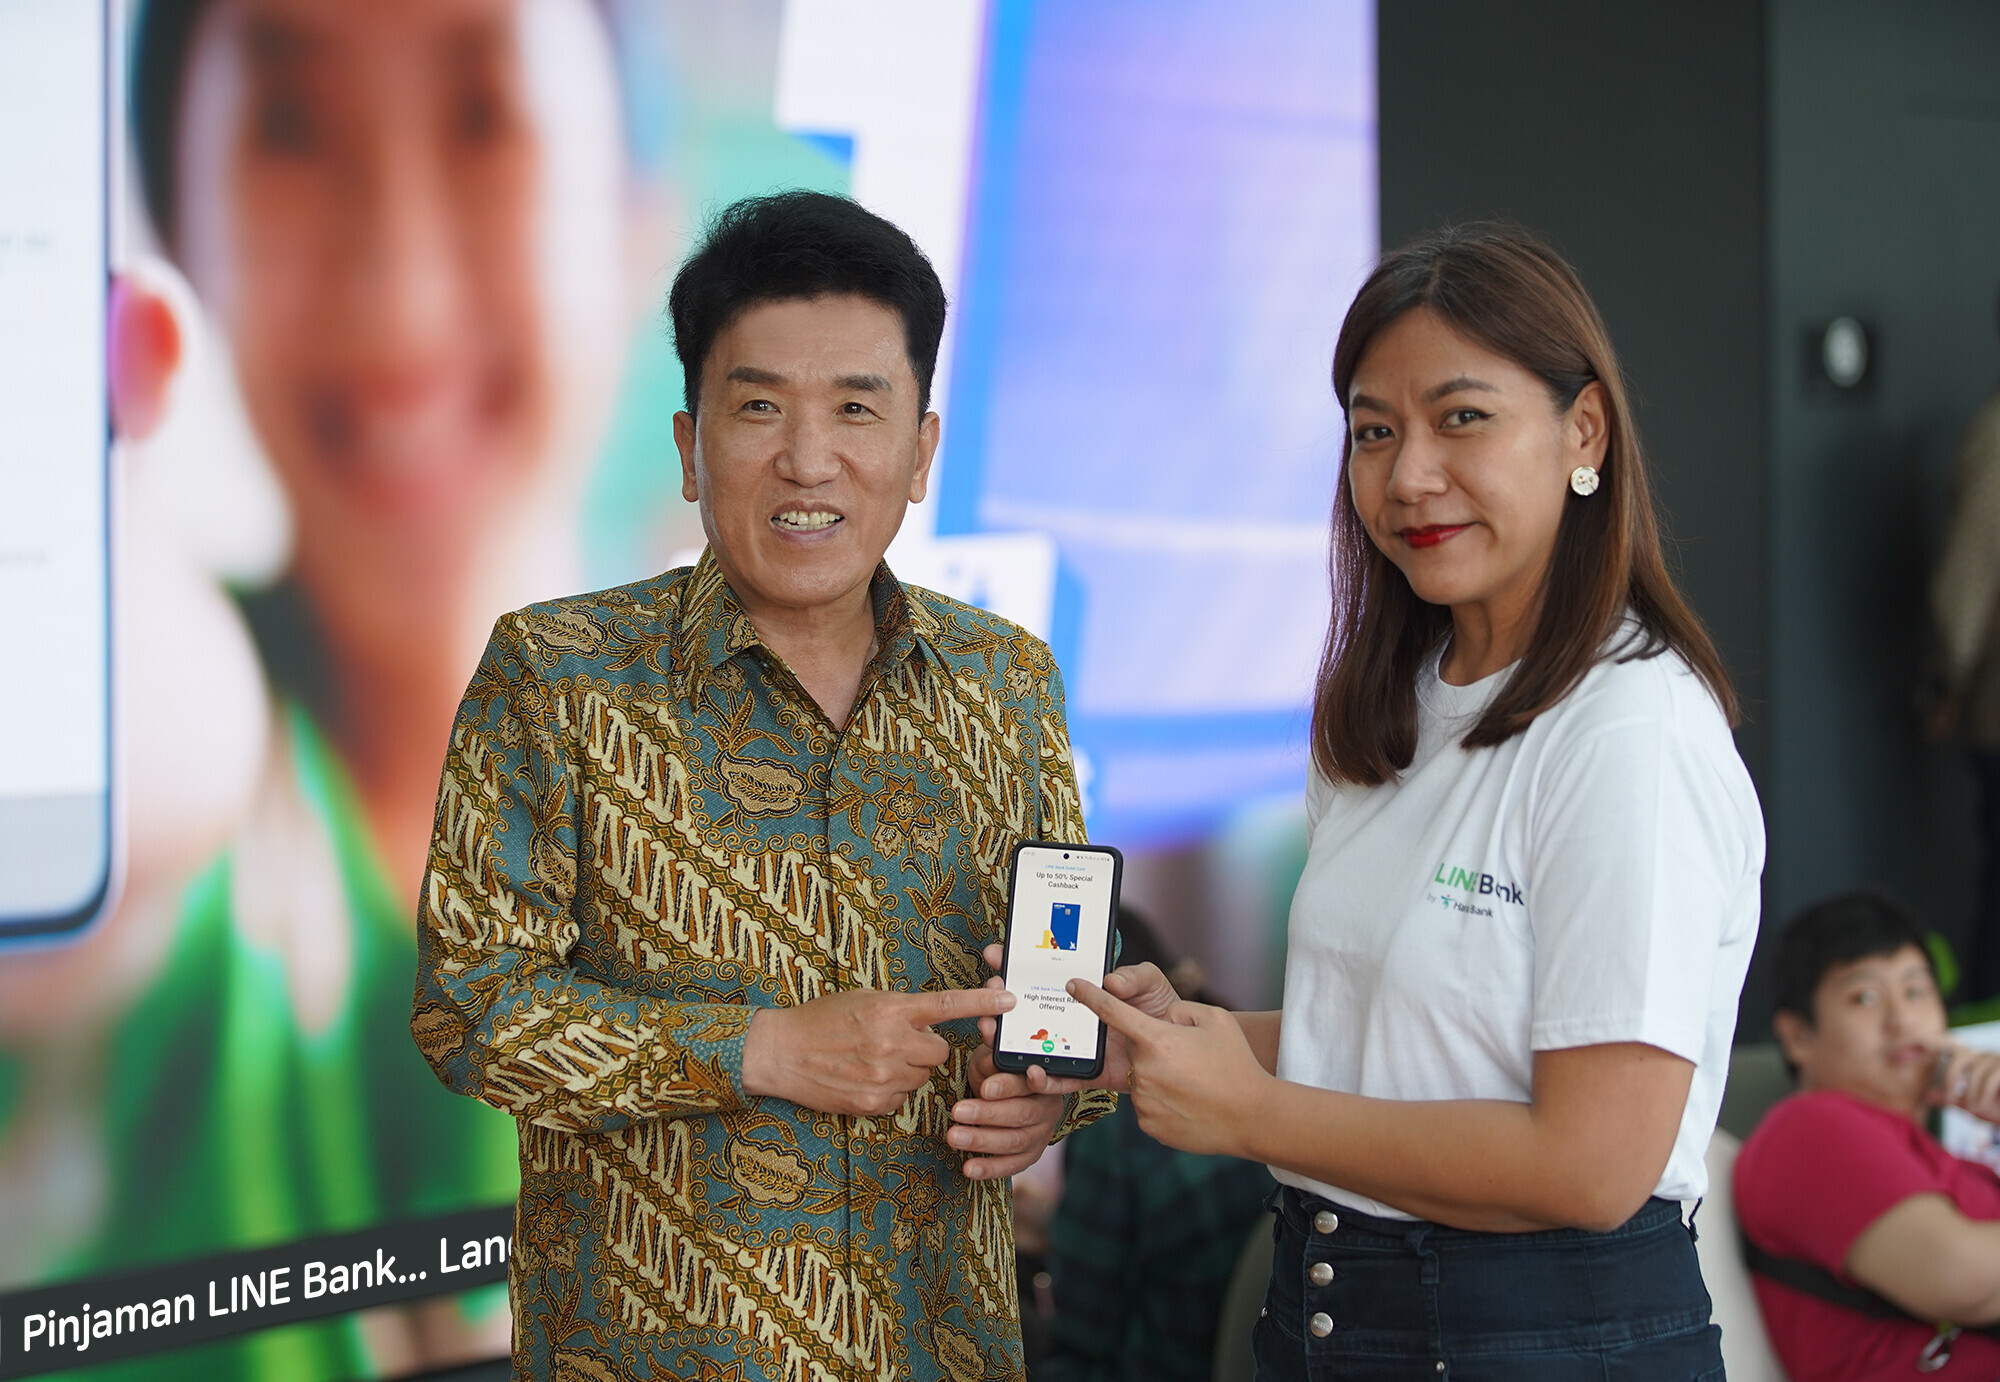 함영주(왼쪽) 하나금융지주 회장이 지난 11일 인도네시아 자카르타의 쇼핑몰 세나얀파크에서 열린 ‘라인뱅크 X 삼성’ 체험 행사에 참석해 현지 라인뱅크 직원과 라인뱅크 애플리케이션(앱)을 시연하고 있다. 하나금융지주 제공